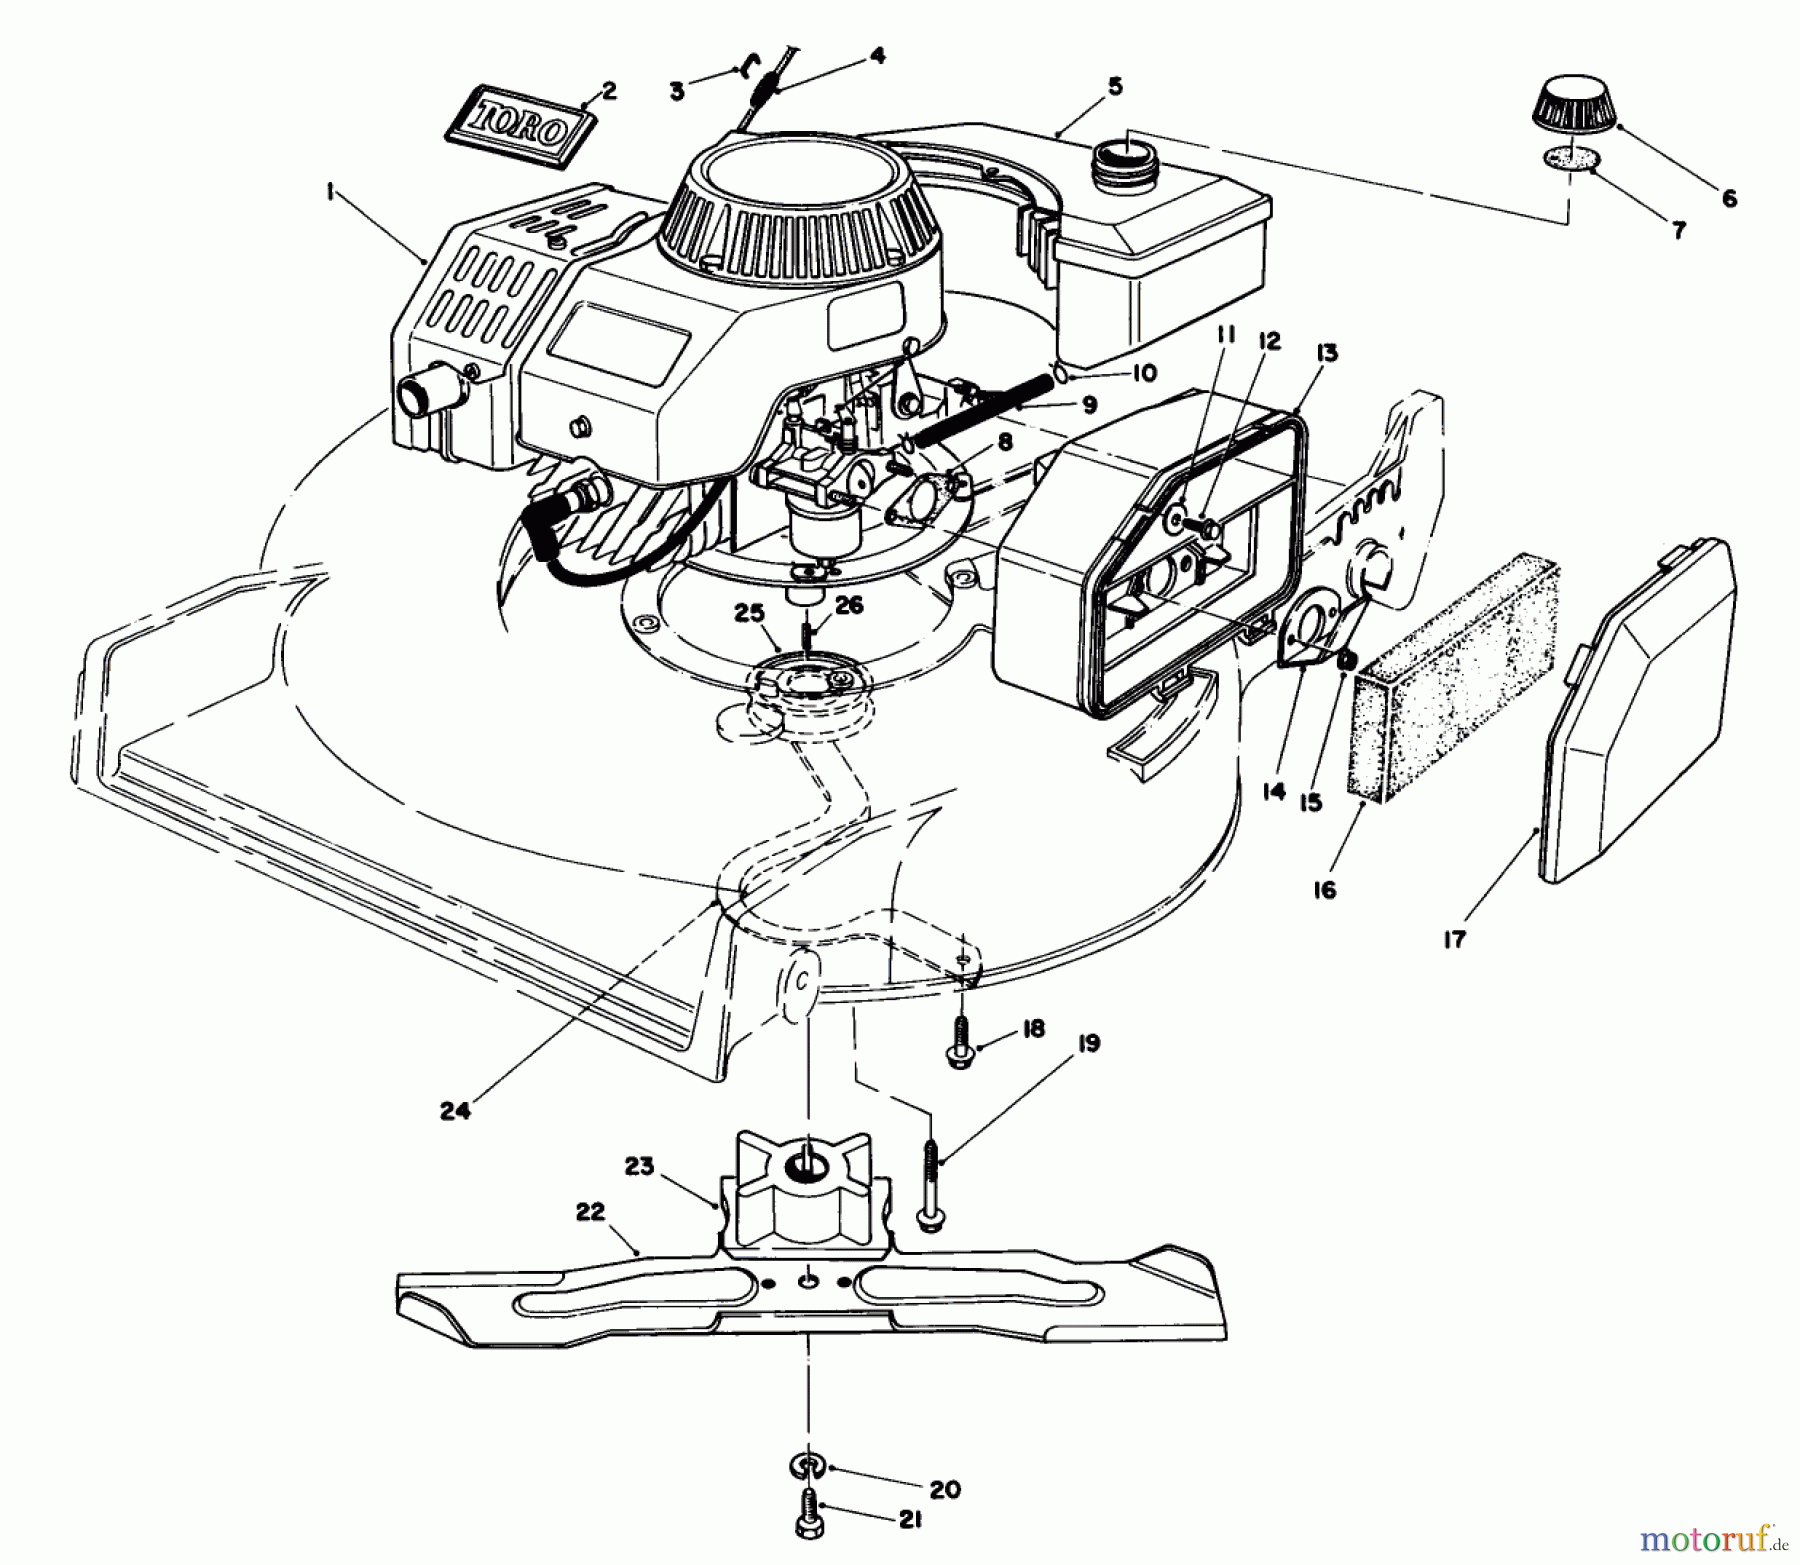  Toro Neu Mowers, Walk-Behind Seite 1 20680 - Toro Lawnmower, 1985 (5000001-5999999) ENGINE ASSEMBLY